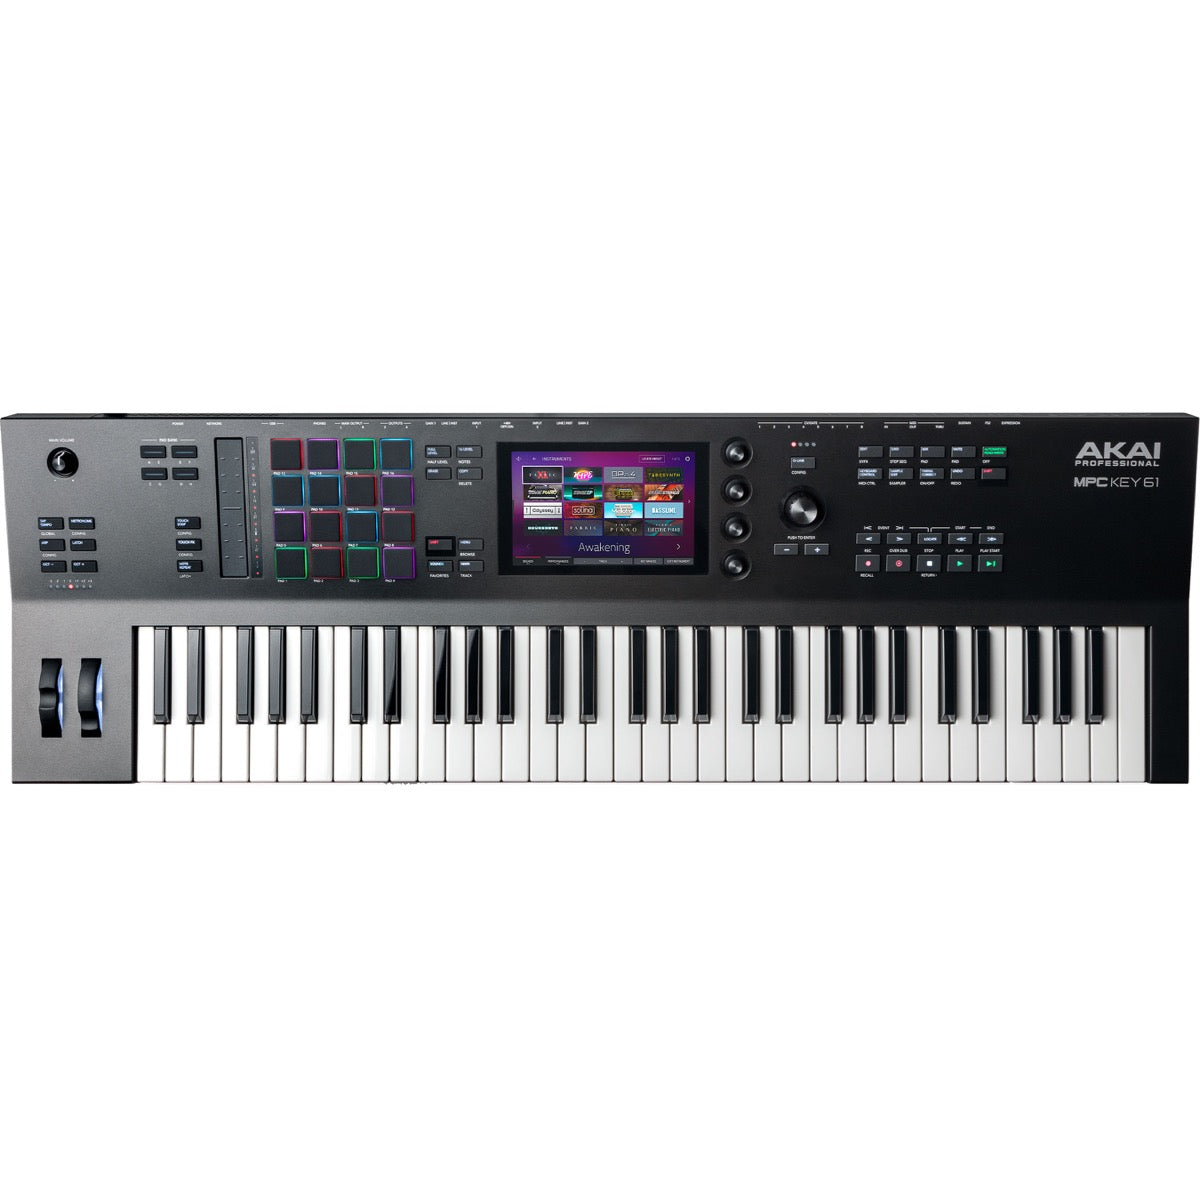 Akai Professional MPC Key 61 Production & Synthesizer Keyboard View 1